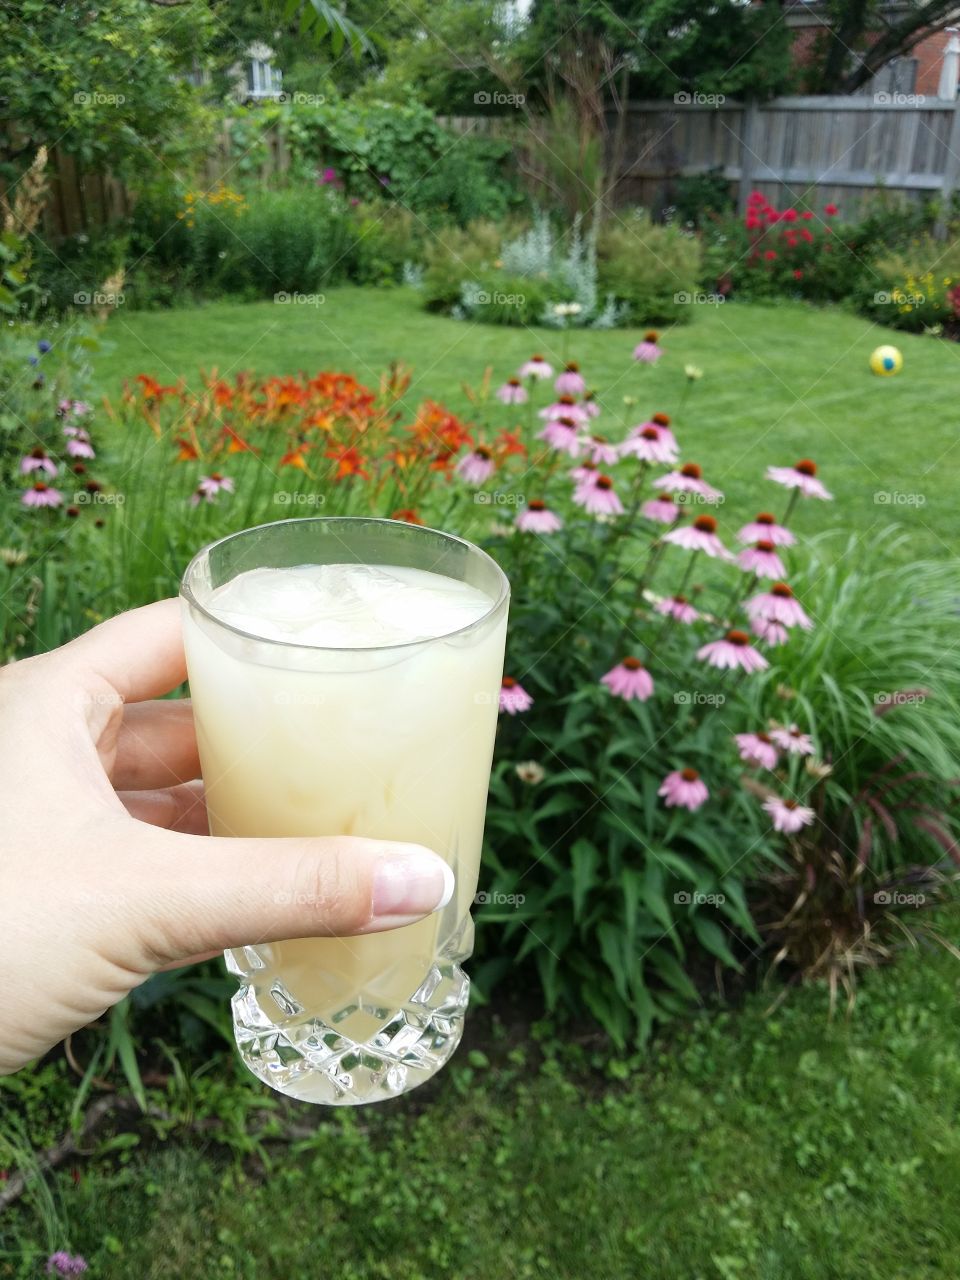 Pastis -  Ricard -  in a summer garden